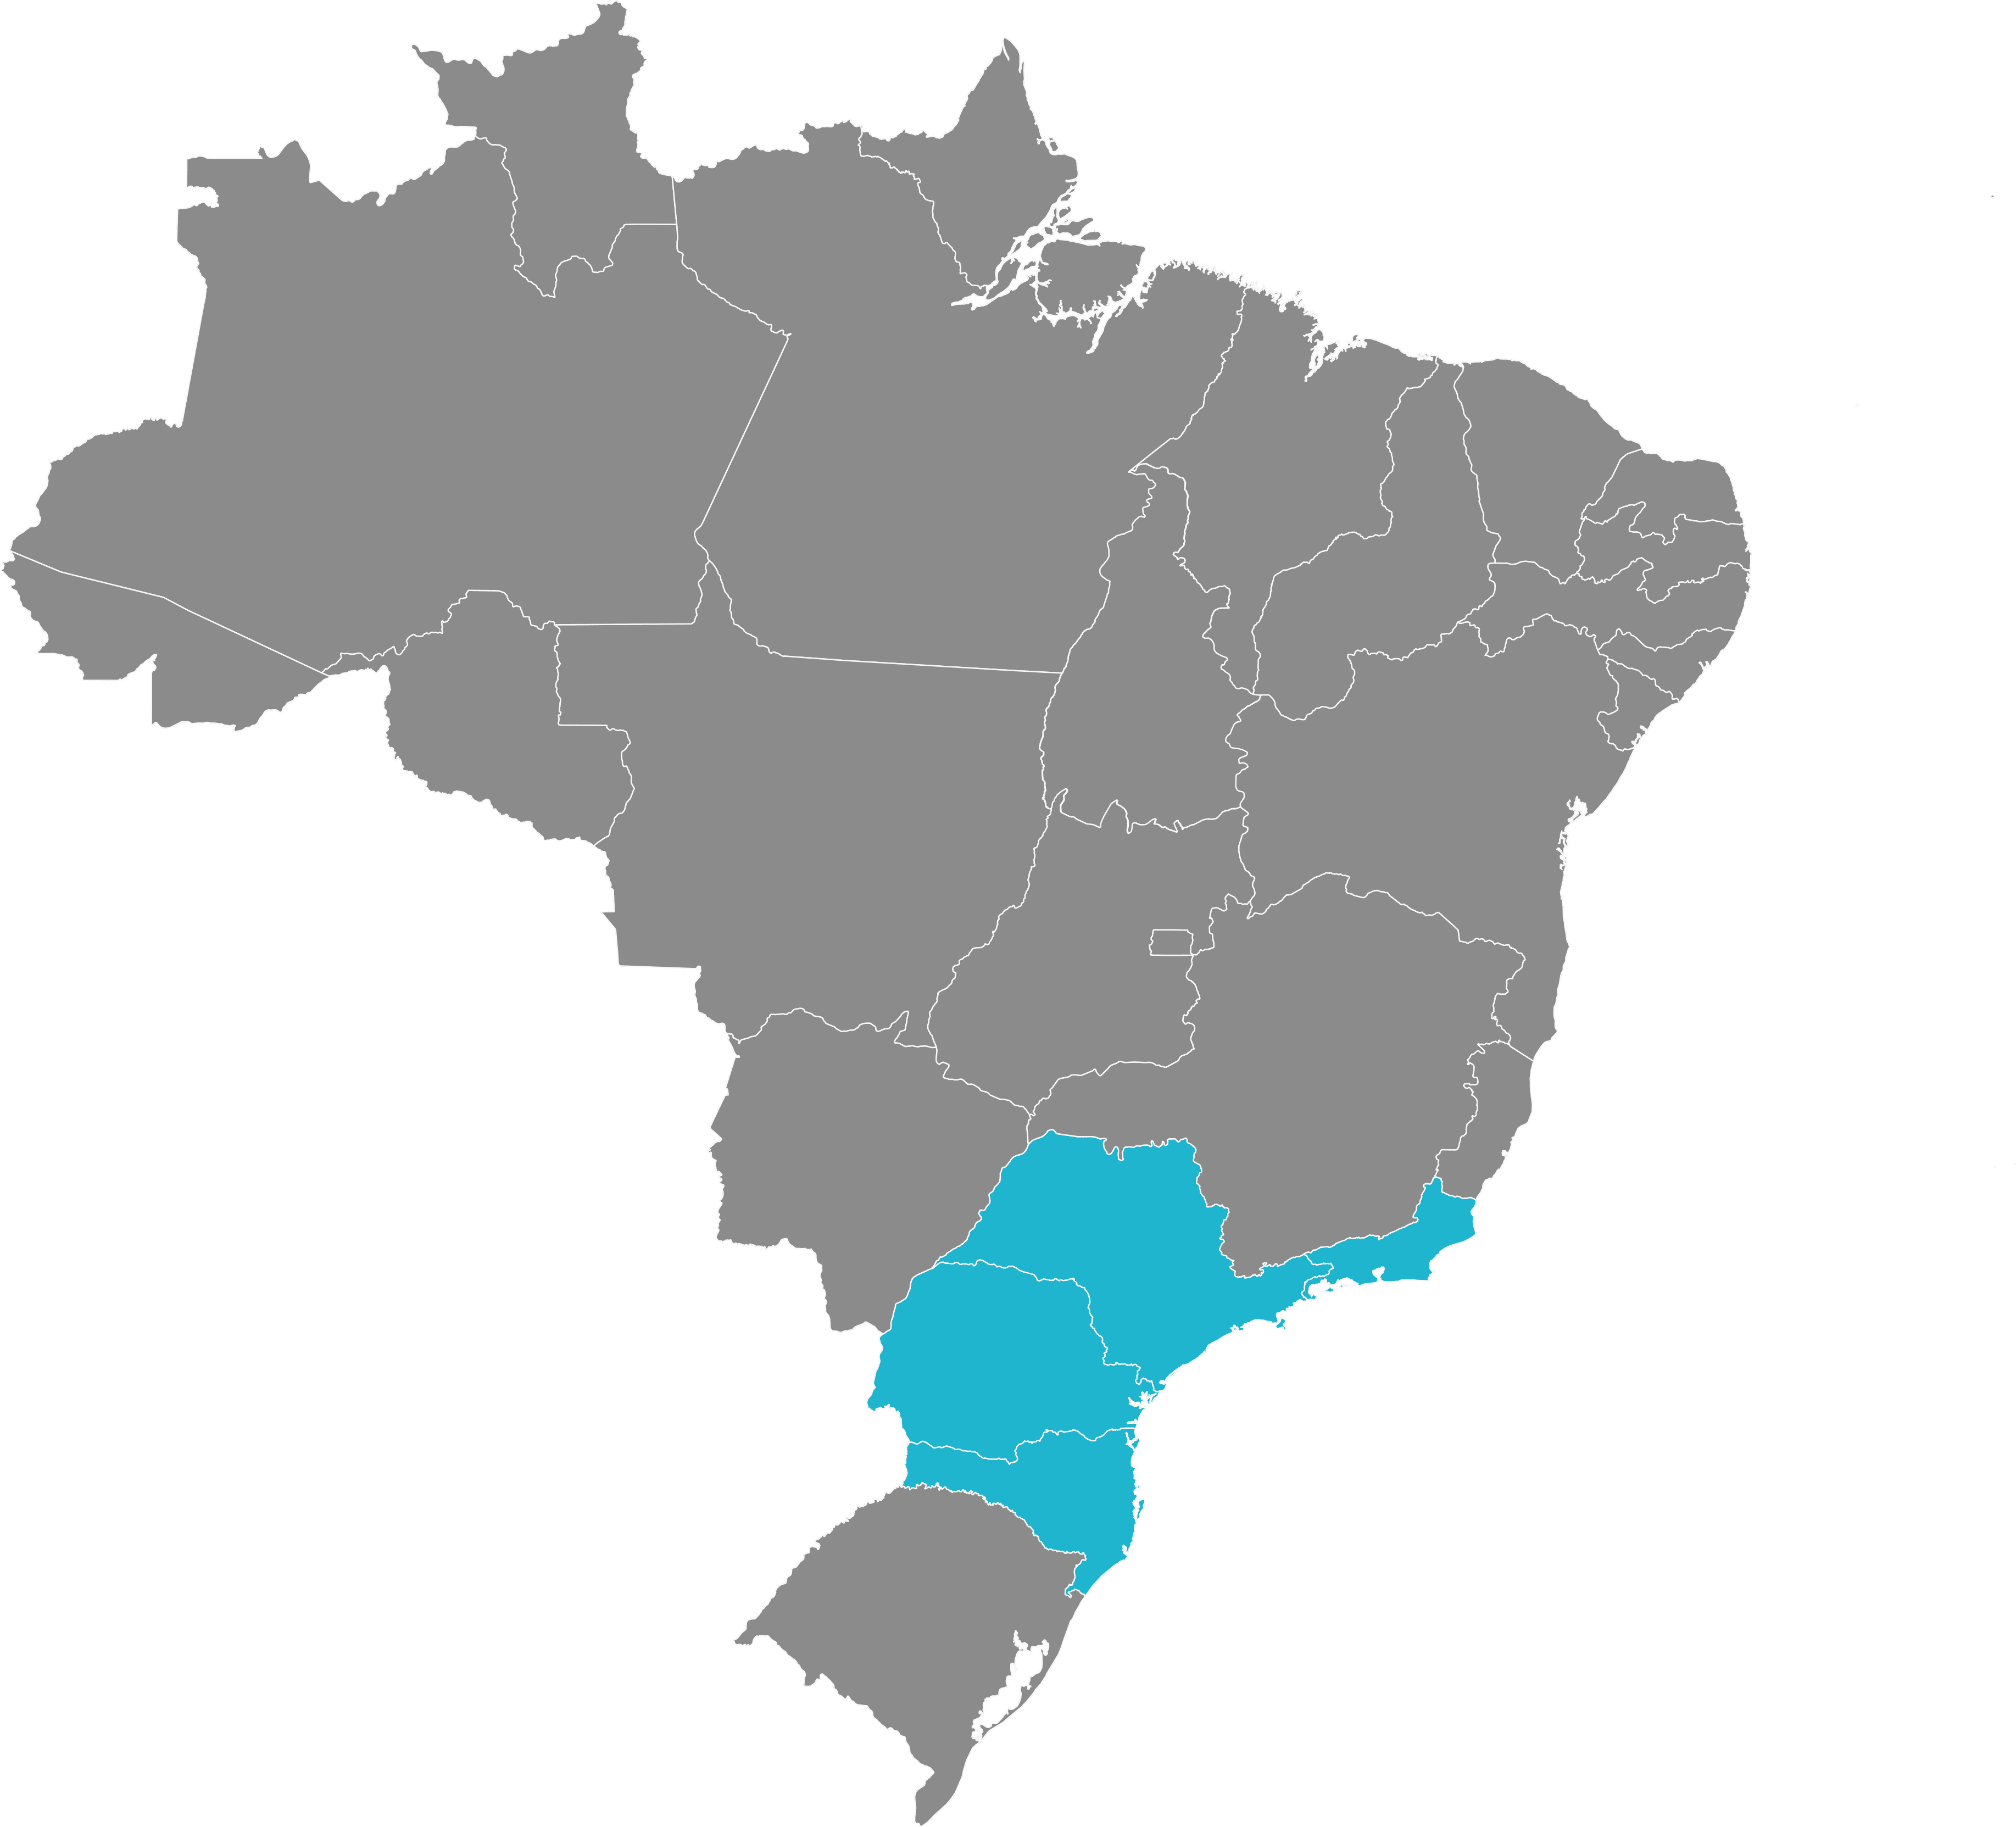 Mapa do Brasil com destaque aos estados com base da Project Vigilância Patrimonial - Facilities